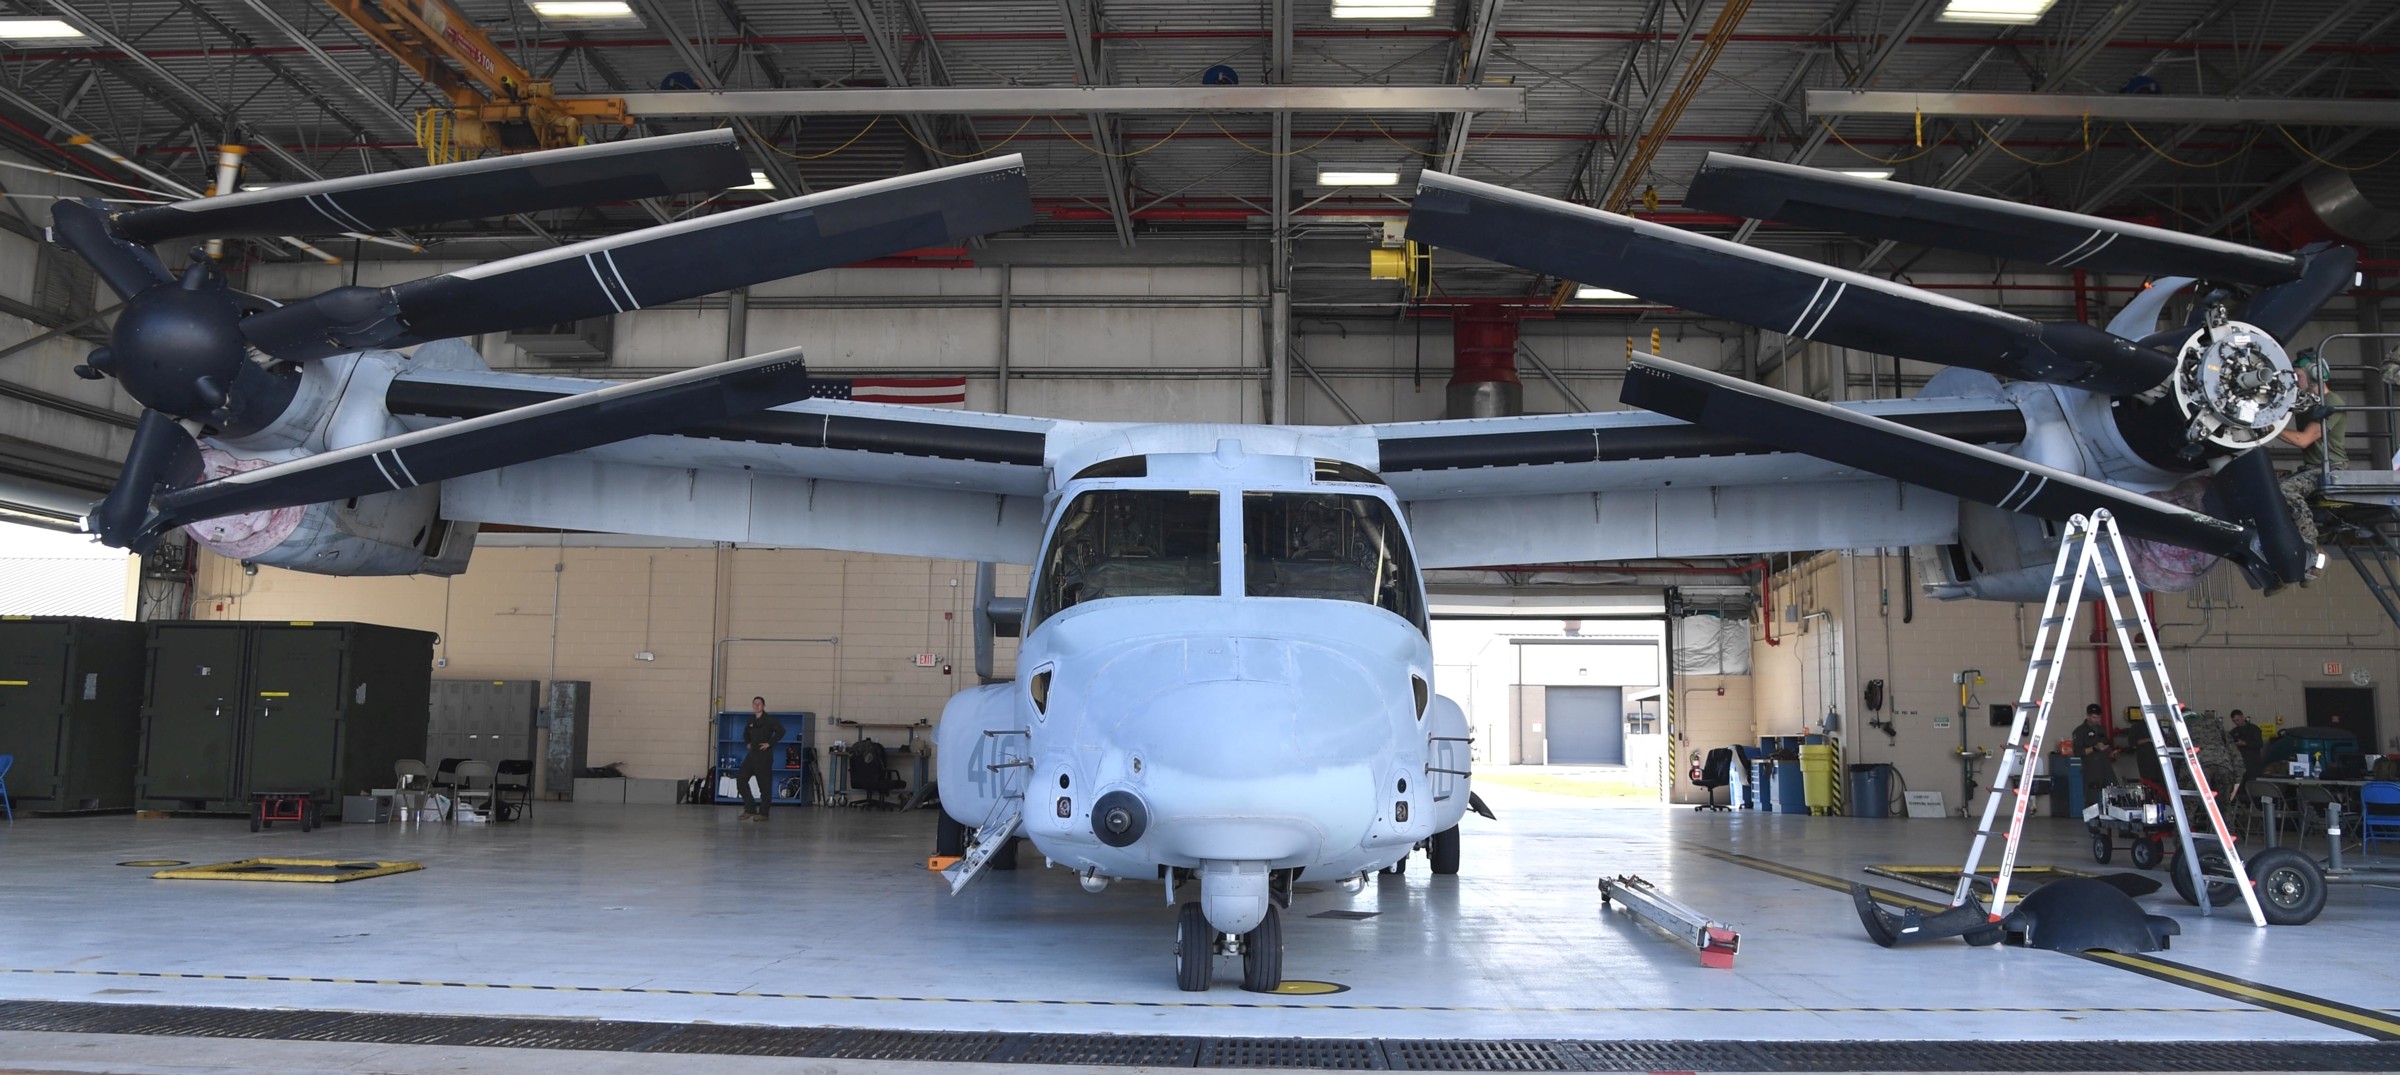 vmm-774 wild goose marine medium tiltrotor squadron mv-22b osprey usmc reserve keesler afb mississippi 17